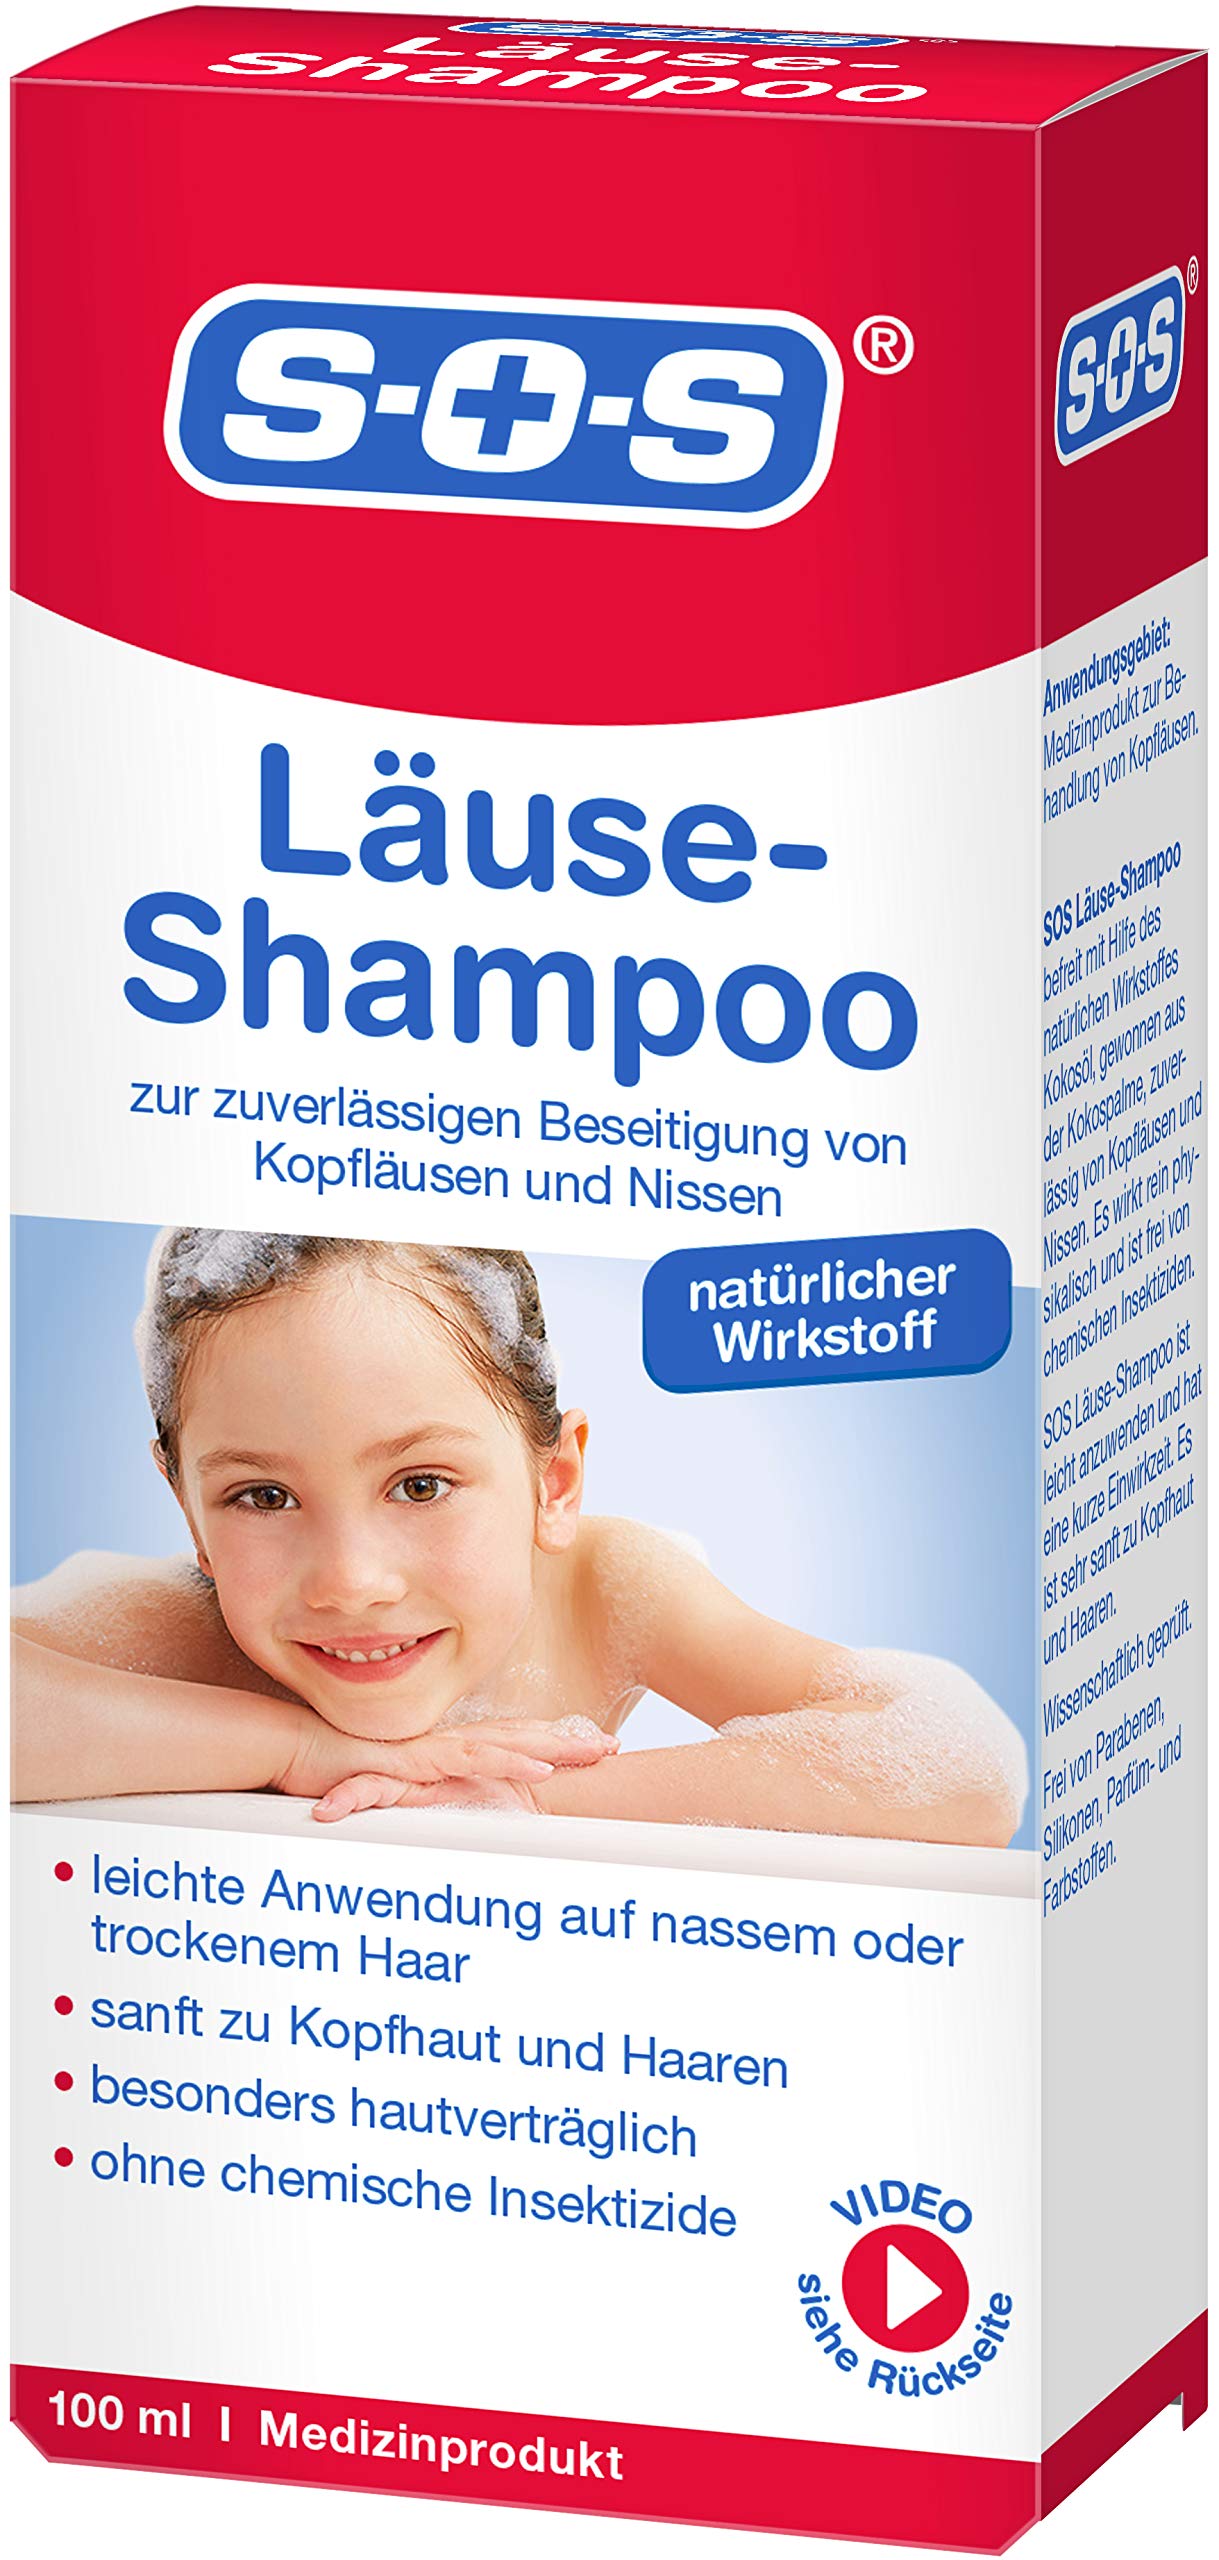 shampoof szampon na wszy